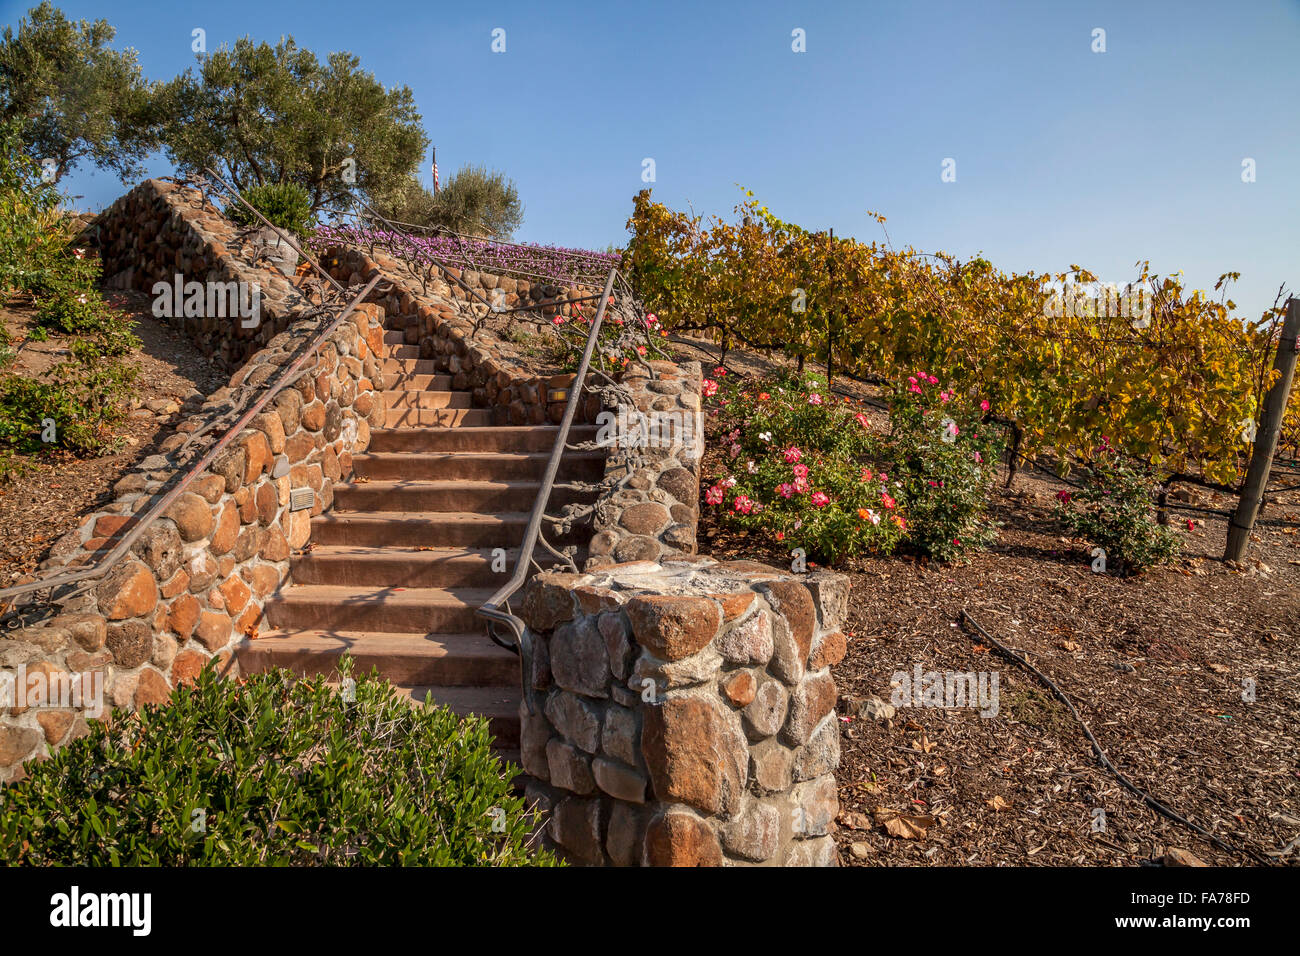 Staircase leading to Viansa Winery, Sonoma, California, USA Stock Photo